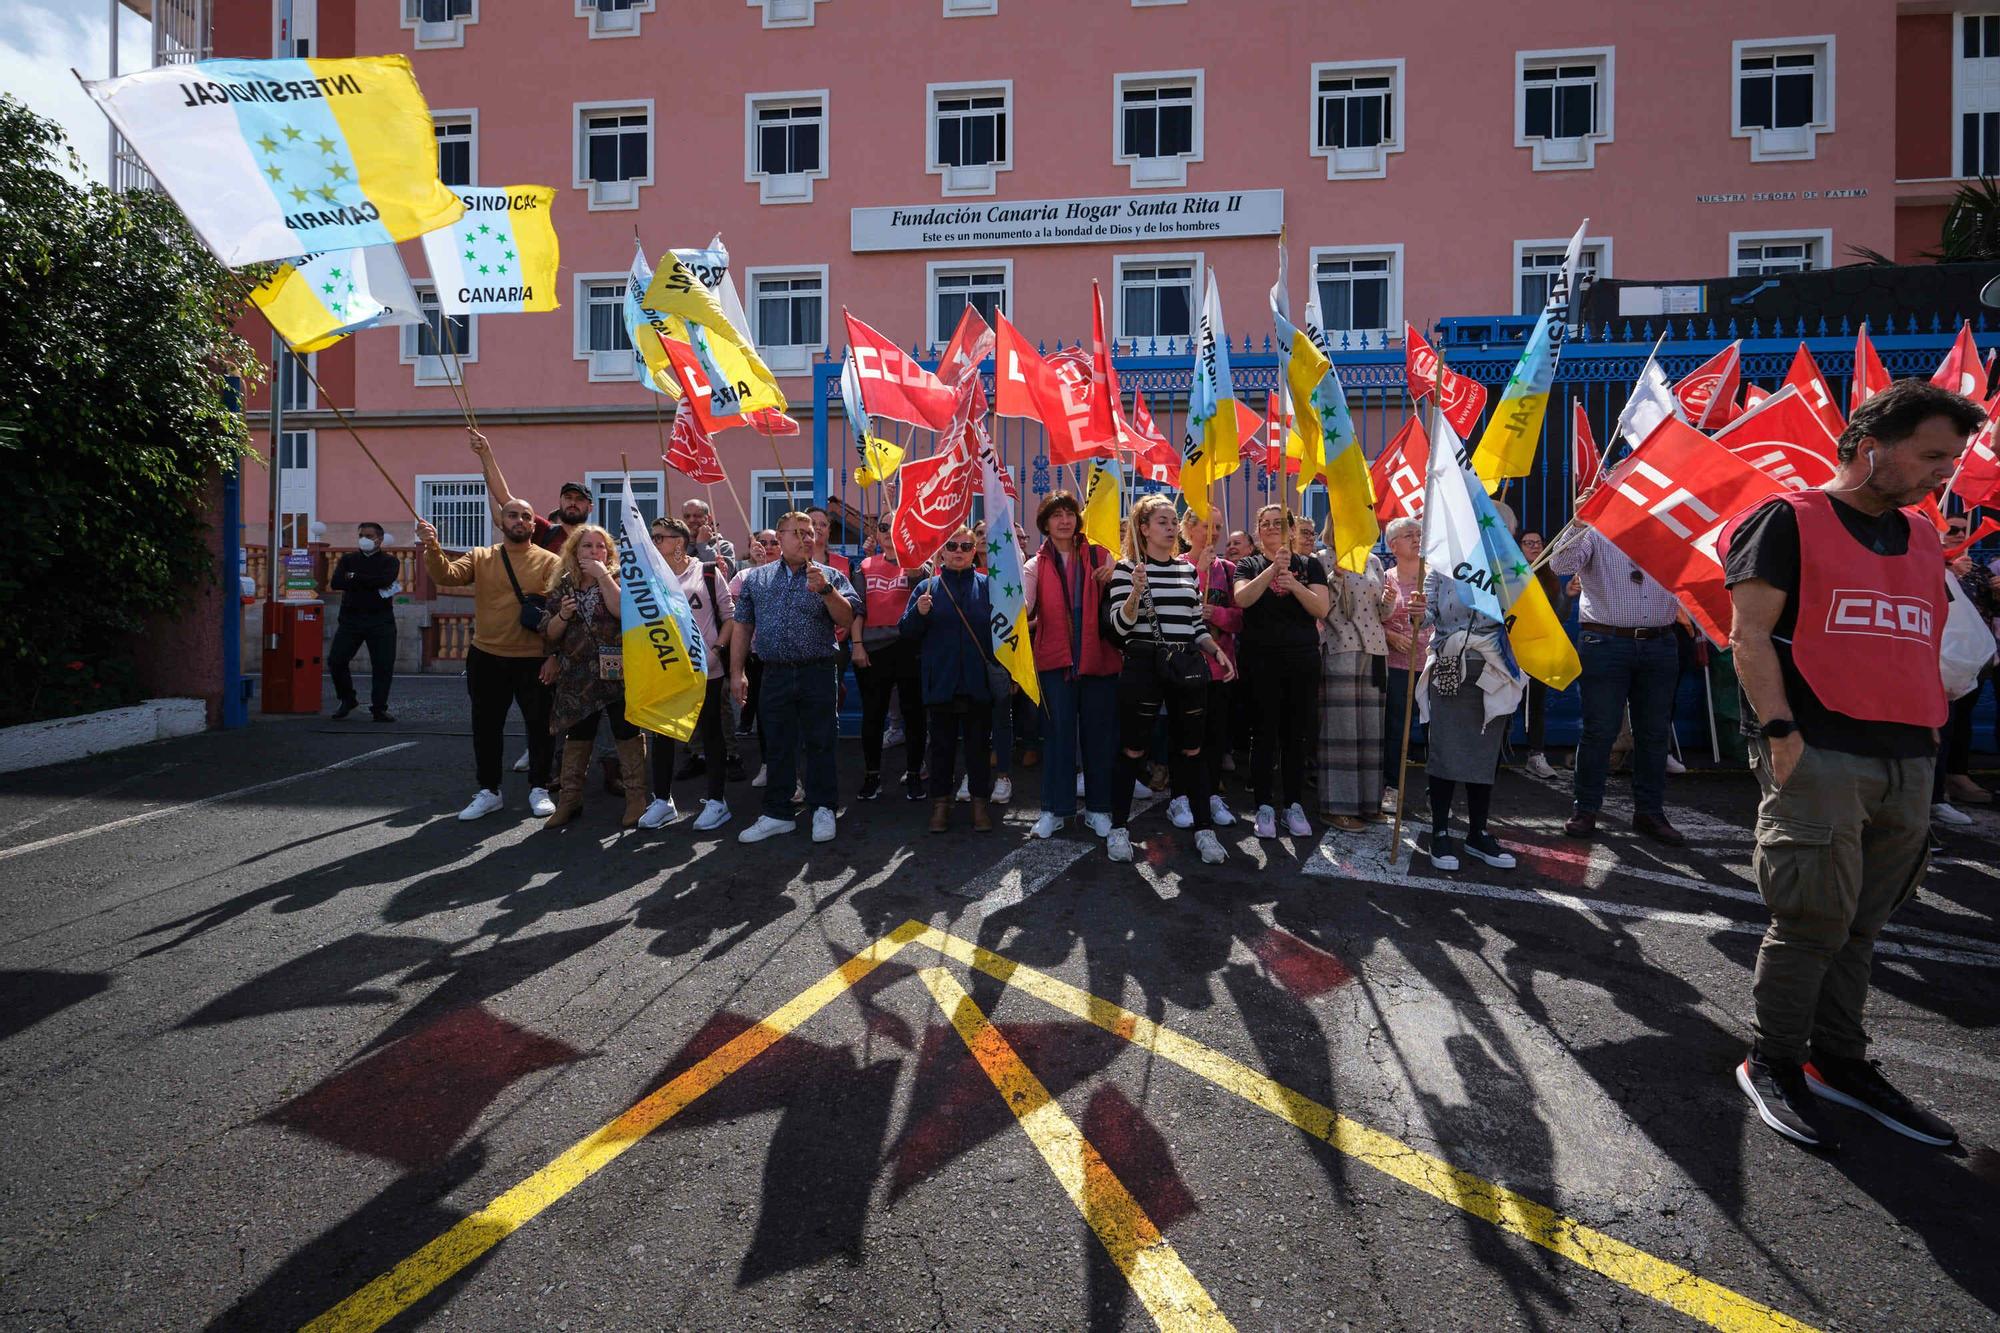 Protesta trabajadores del Hogar Santa Rita